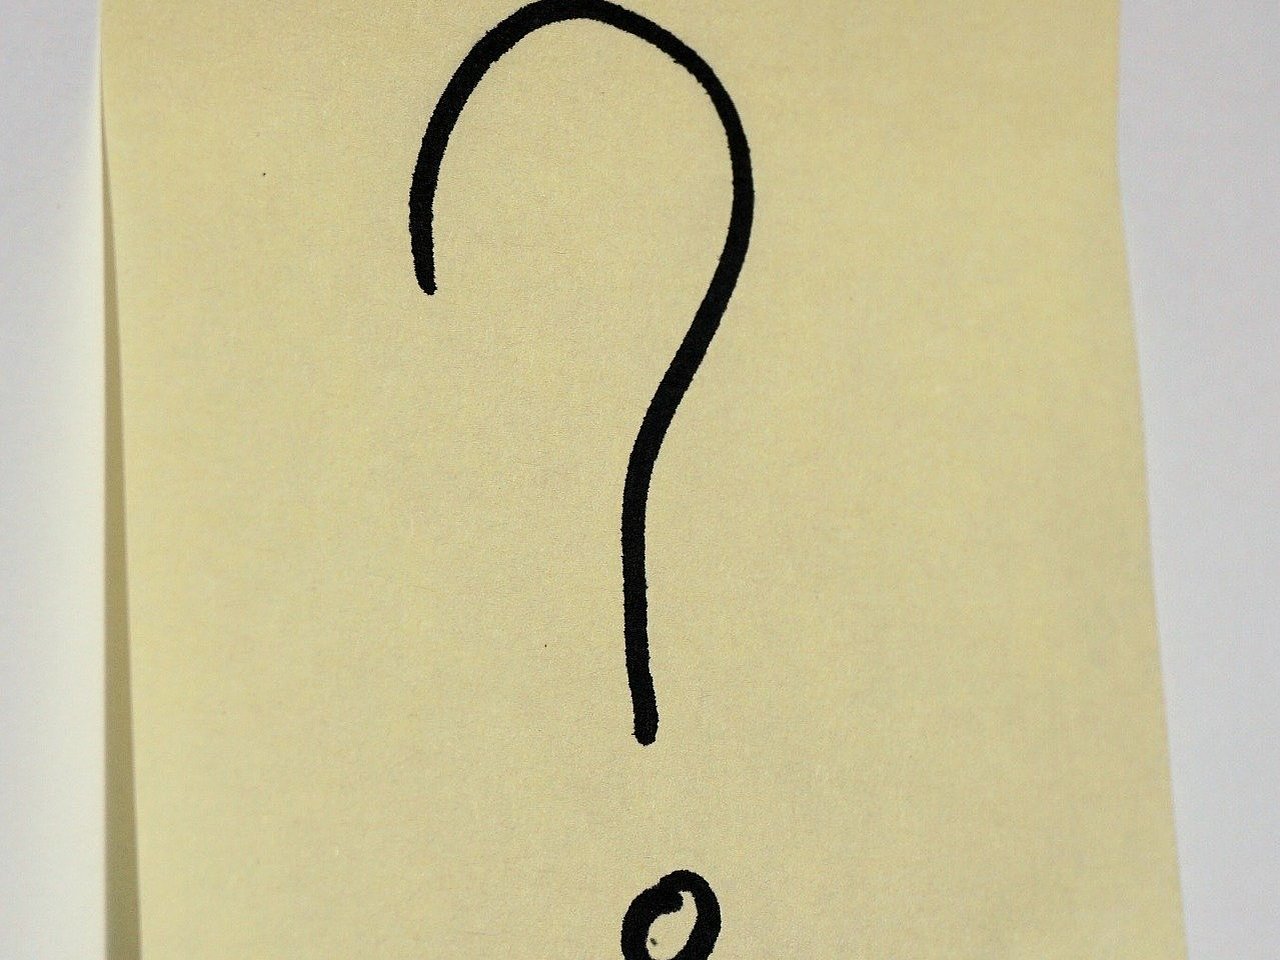 Das Bild zeigt ein hellgelbes Post-it mit einem schwarzen Fragezeichen darauf